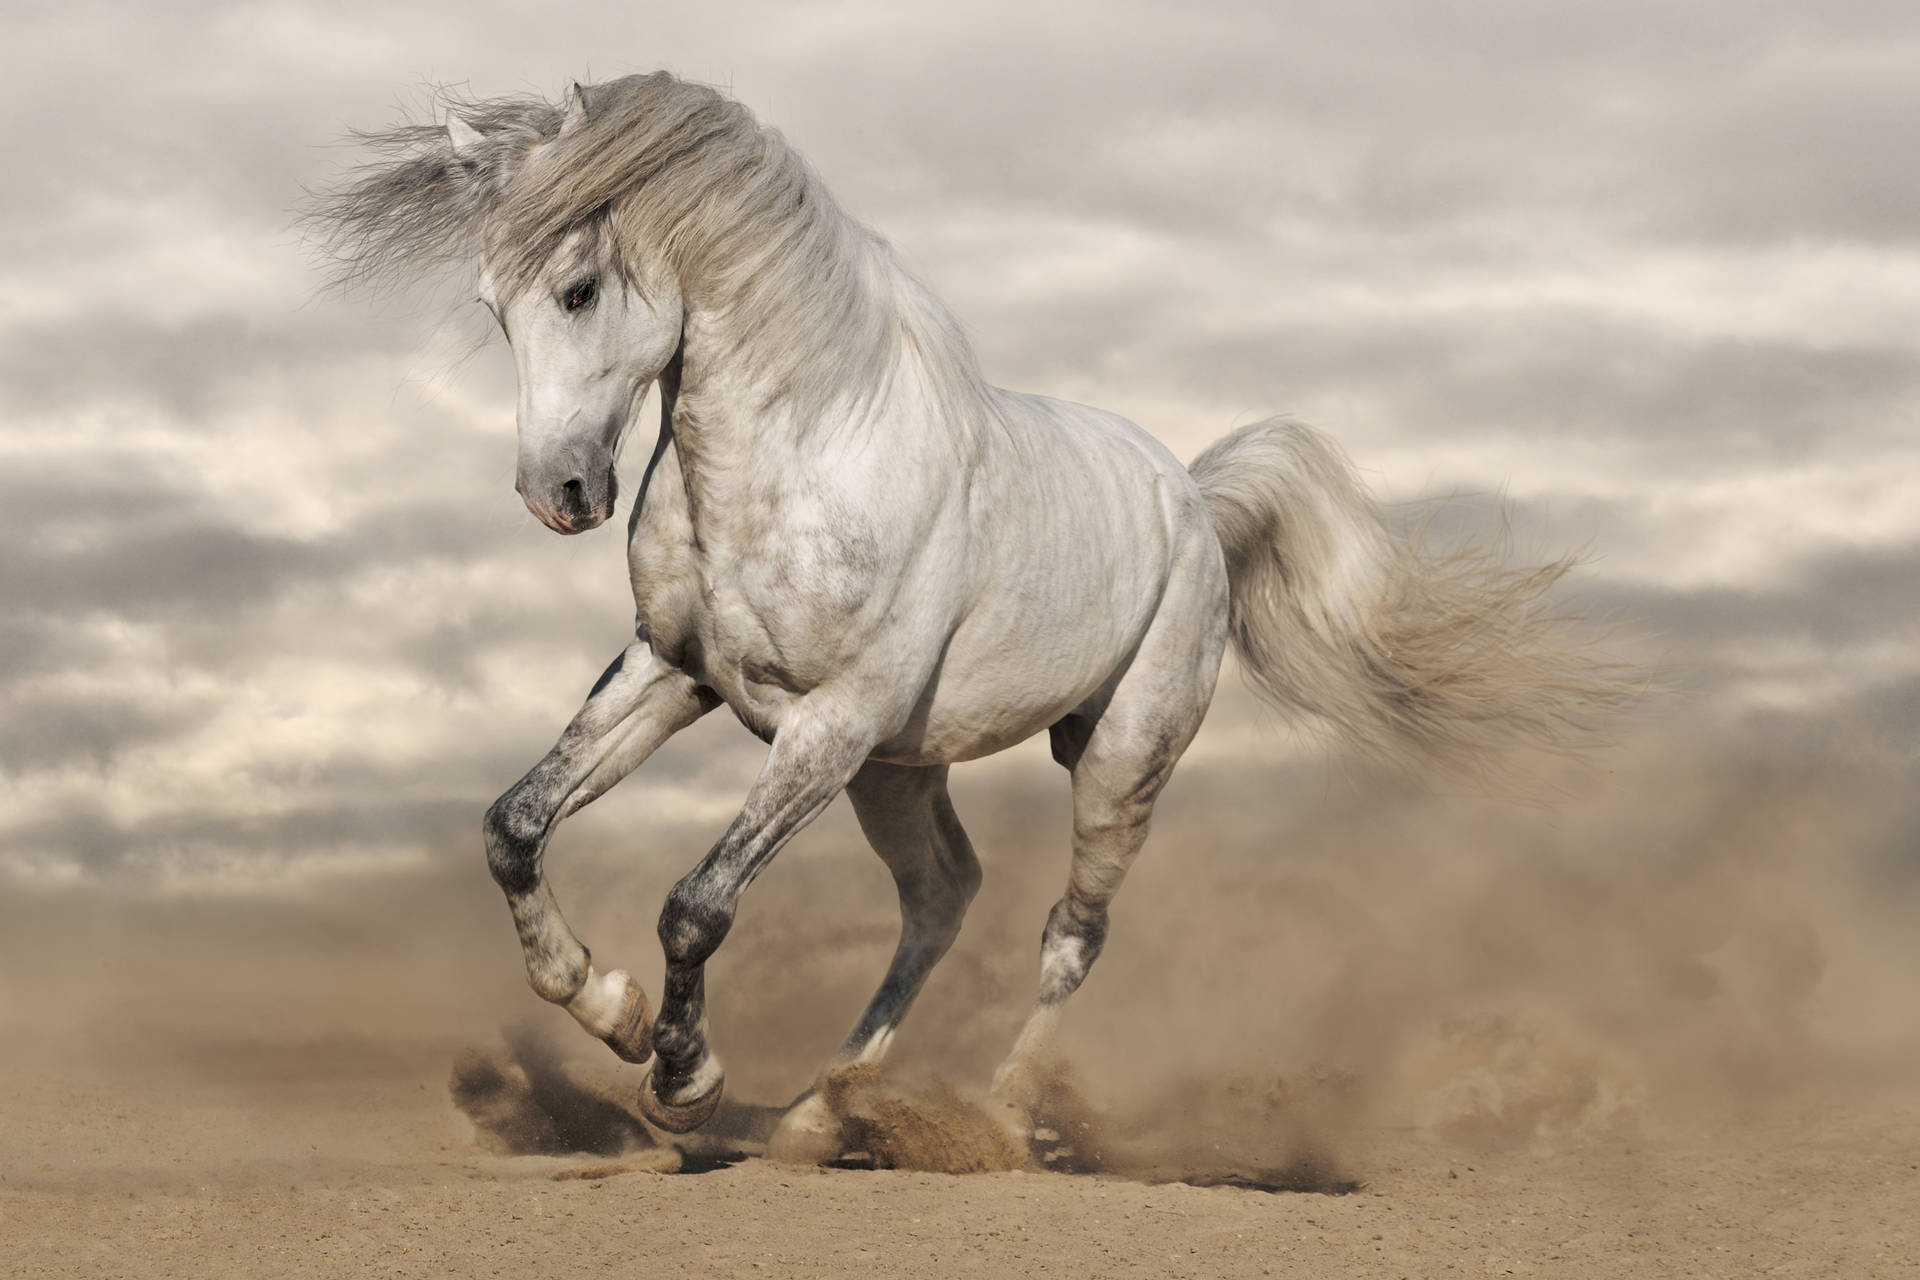 Cantering White Horse In Desert Wallpaper